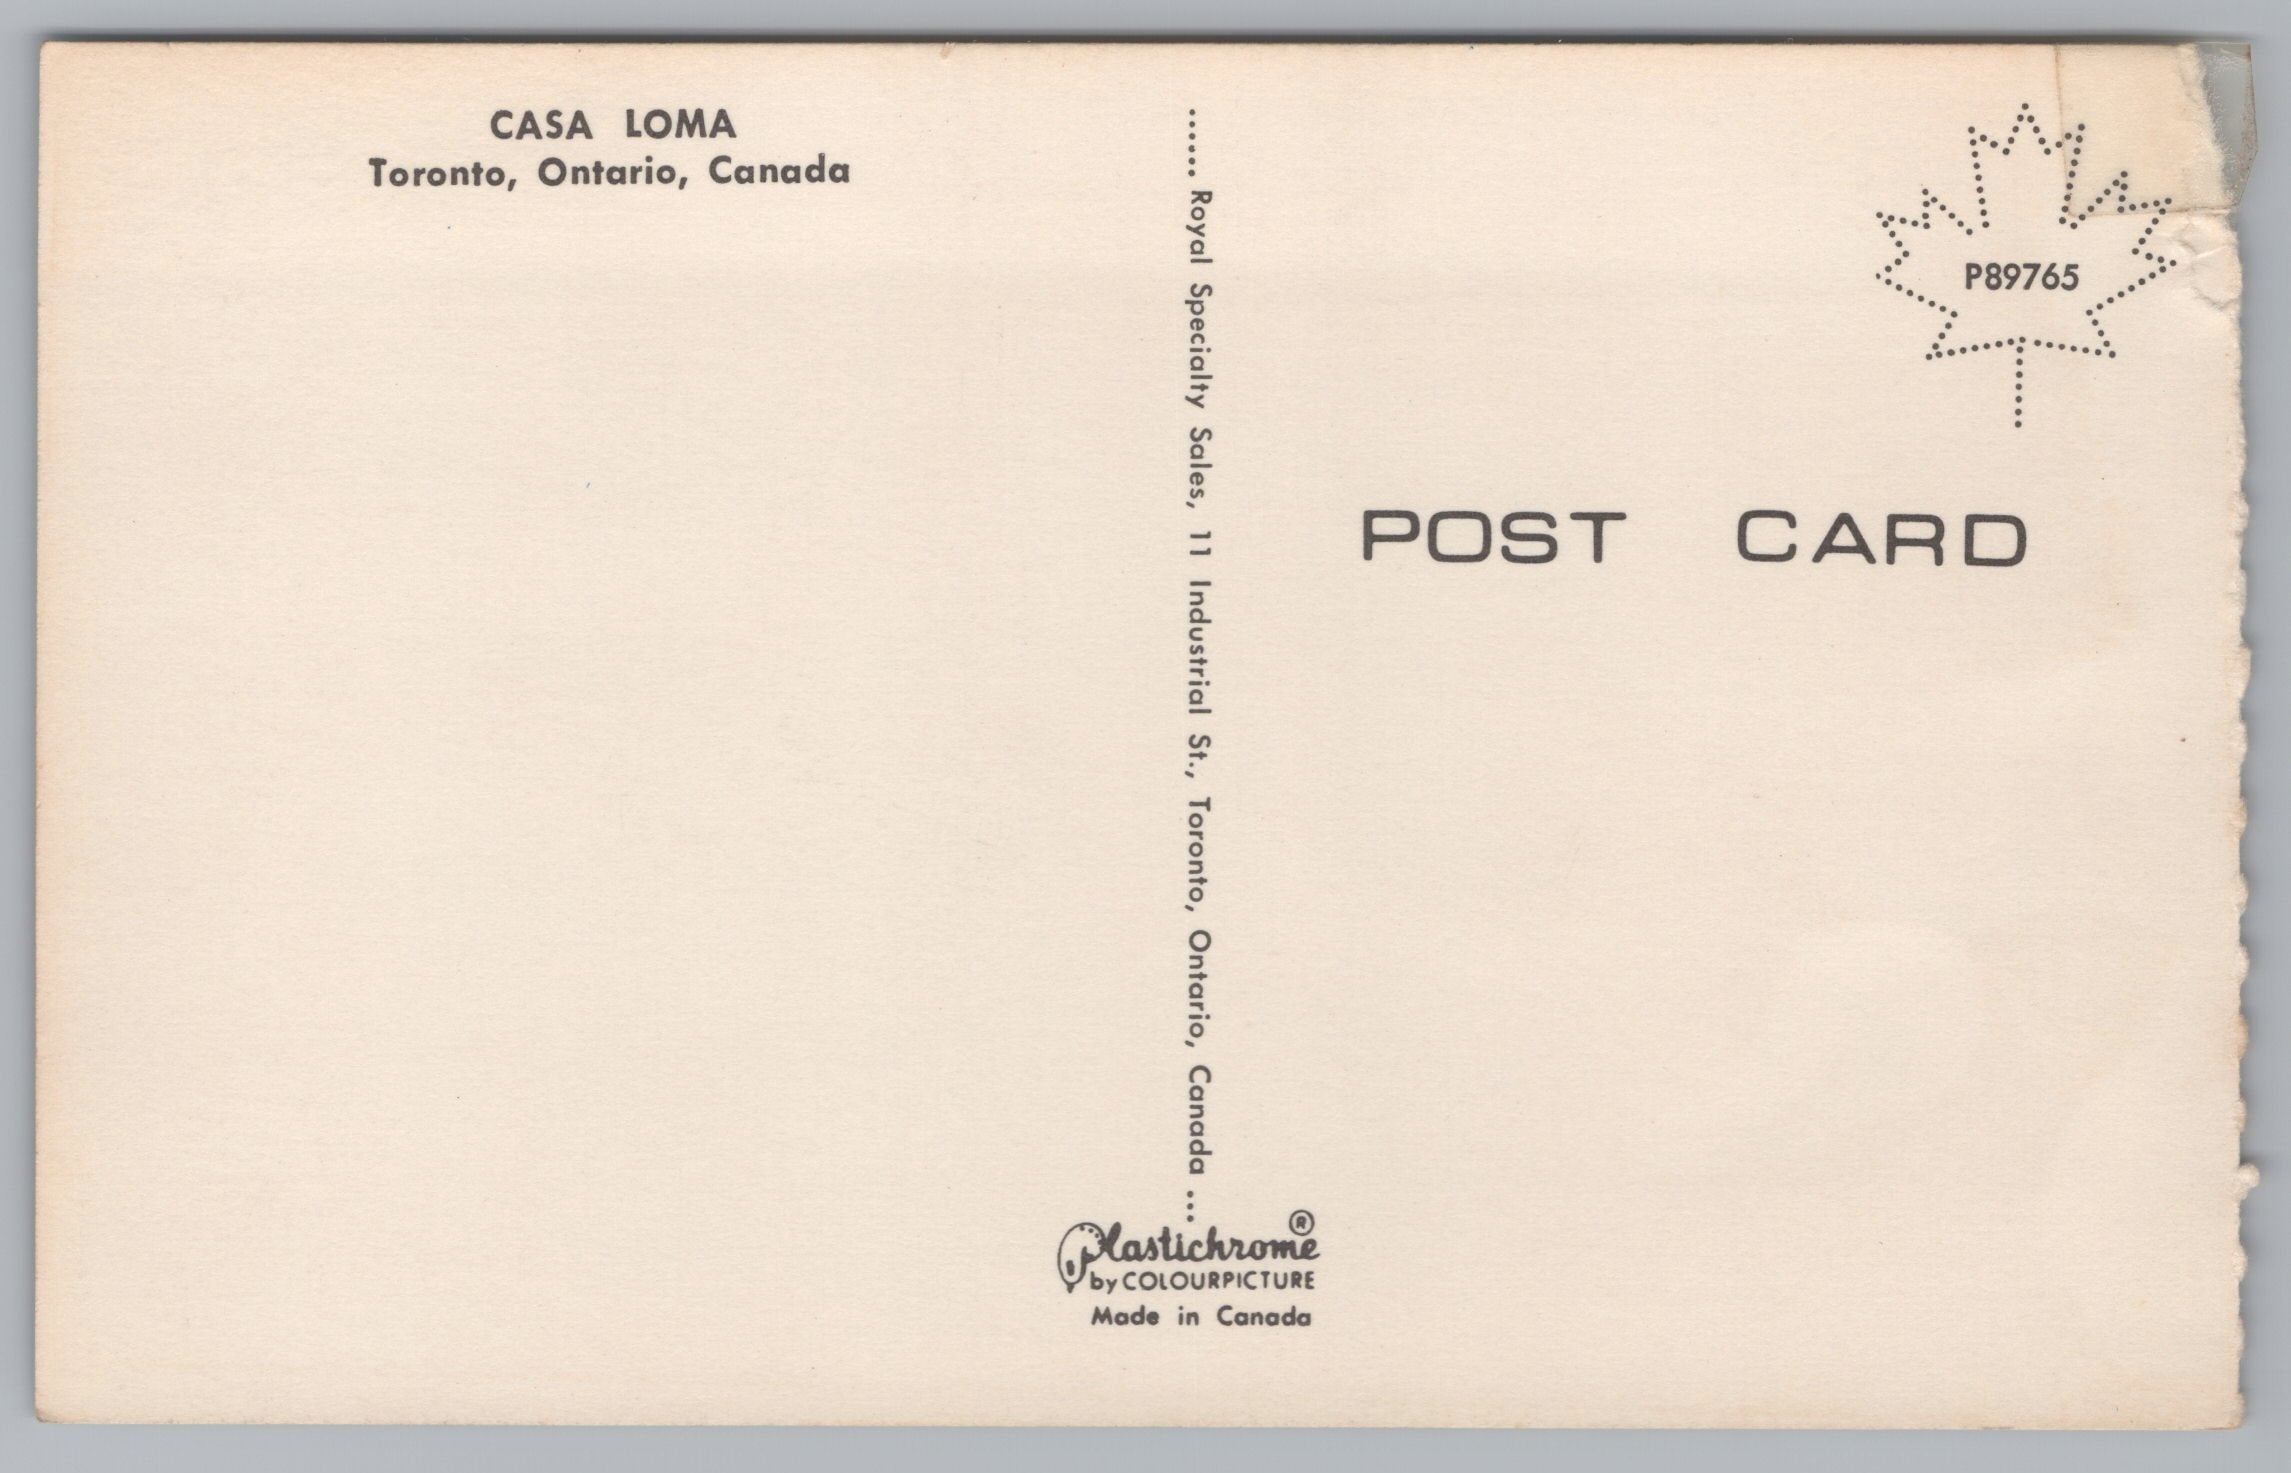 Casa Loma, Toronto, Ontario, Canada, Vintage Post Card.